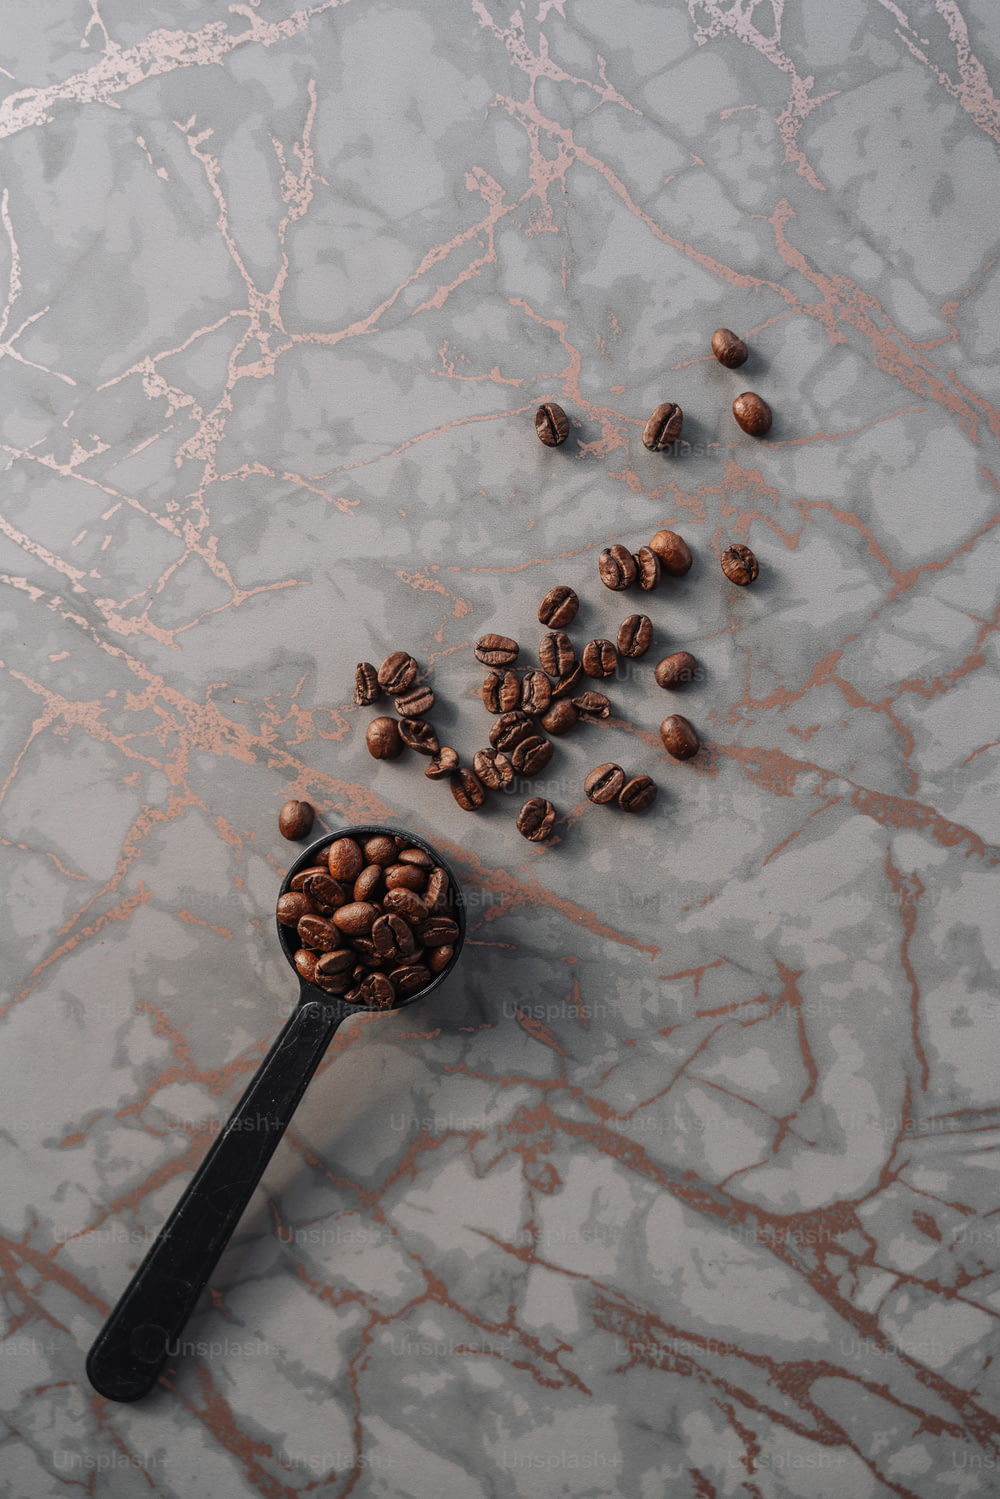 una cuchara llena de granos de café sobre una superficie de mármol